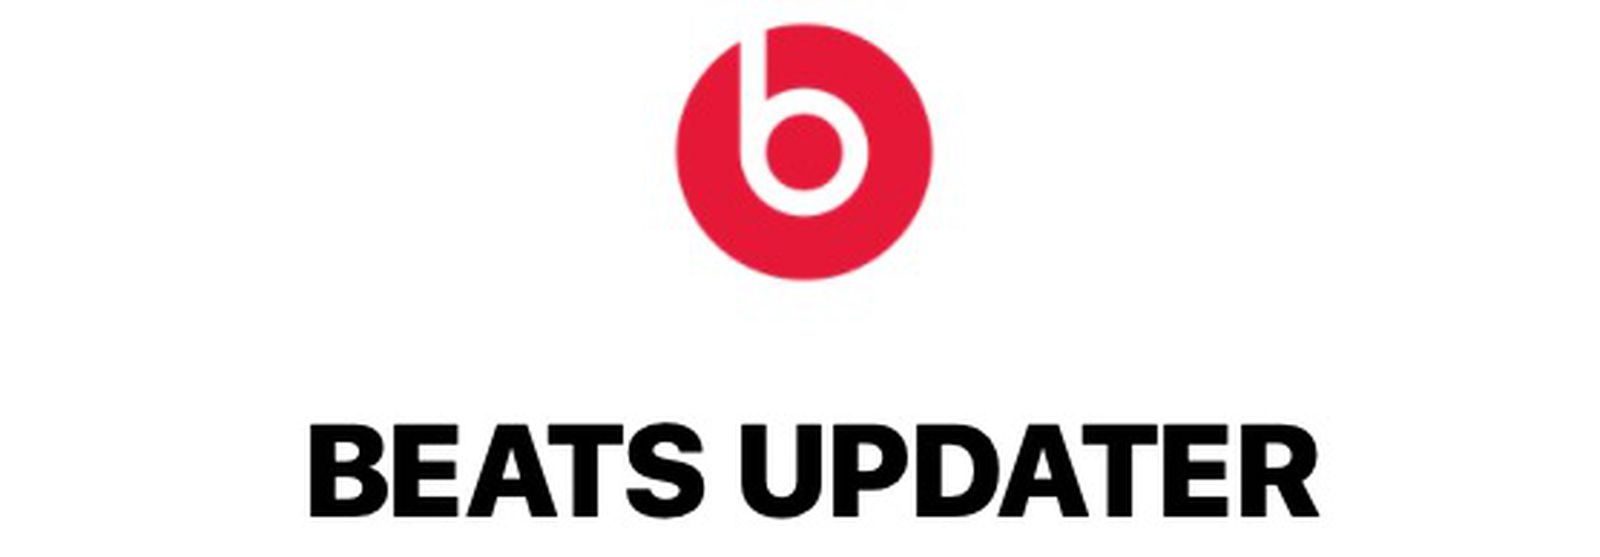 beats updater download